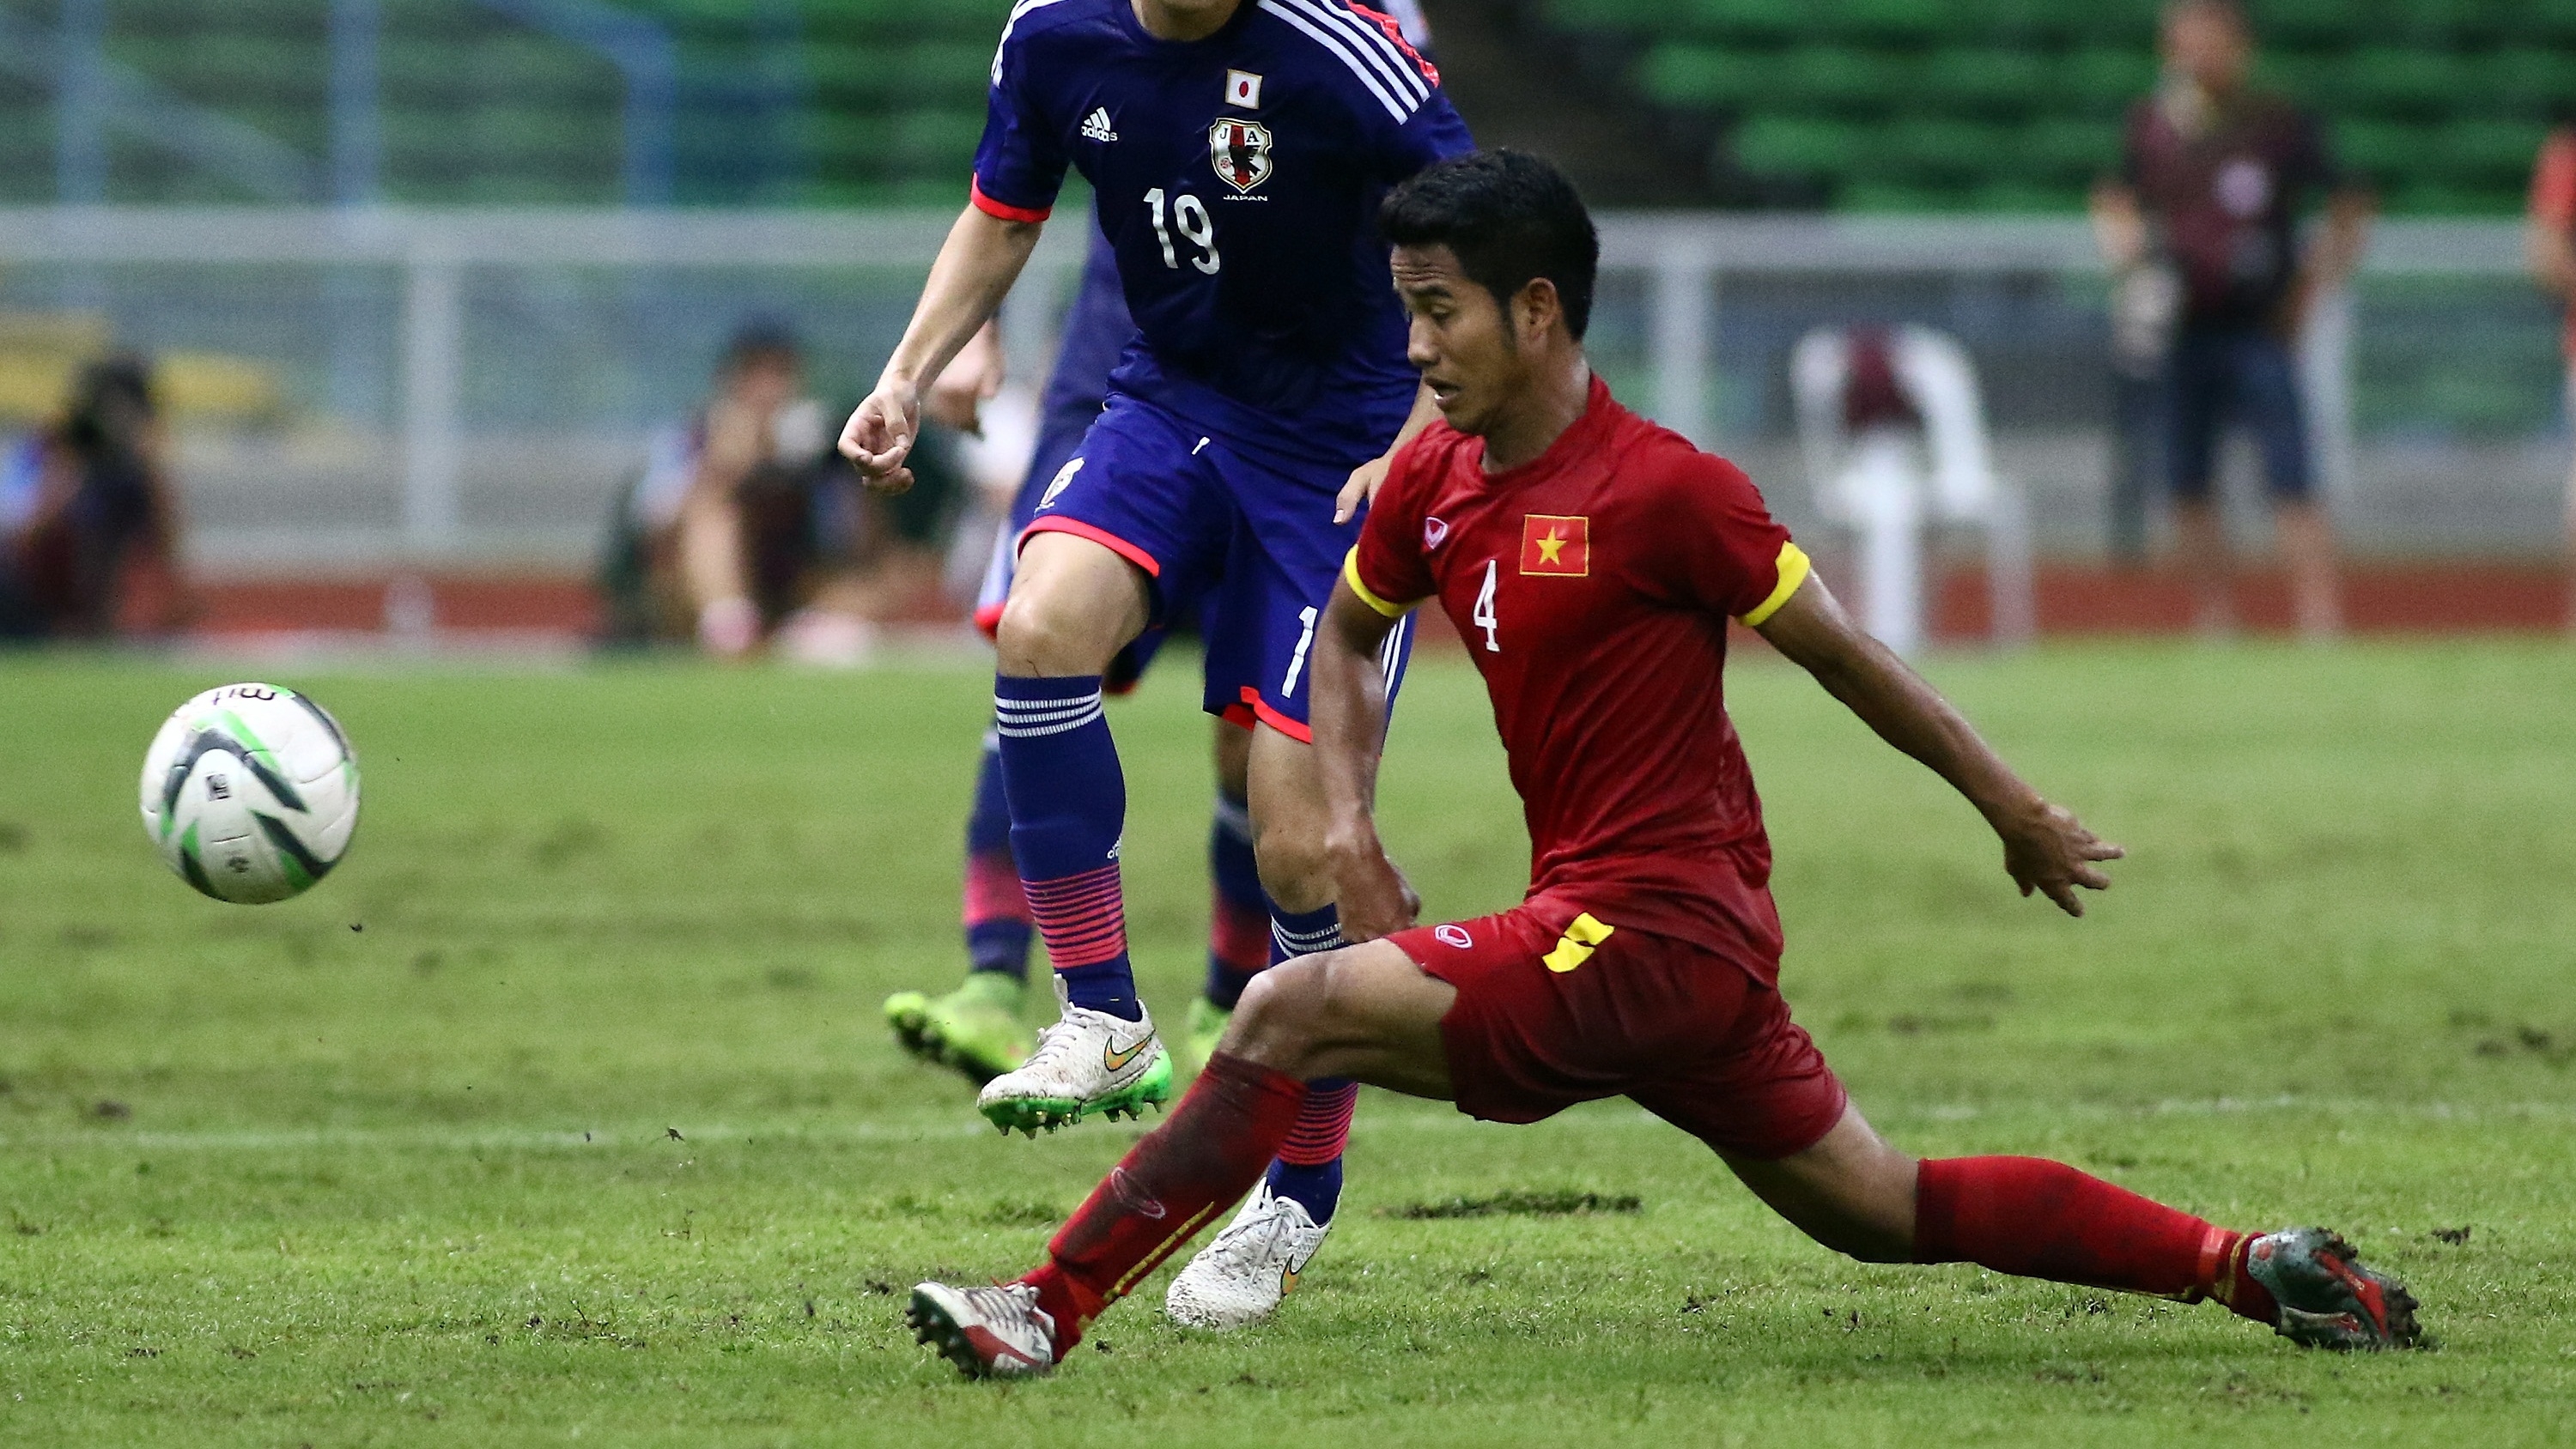 Nhìn lại Vòng loại U23 châu Á 2016: Thầy trò ông Miura vượt khó thành công | Goal.com Việt Nam